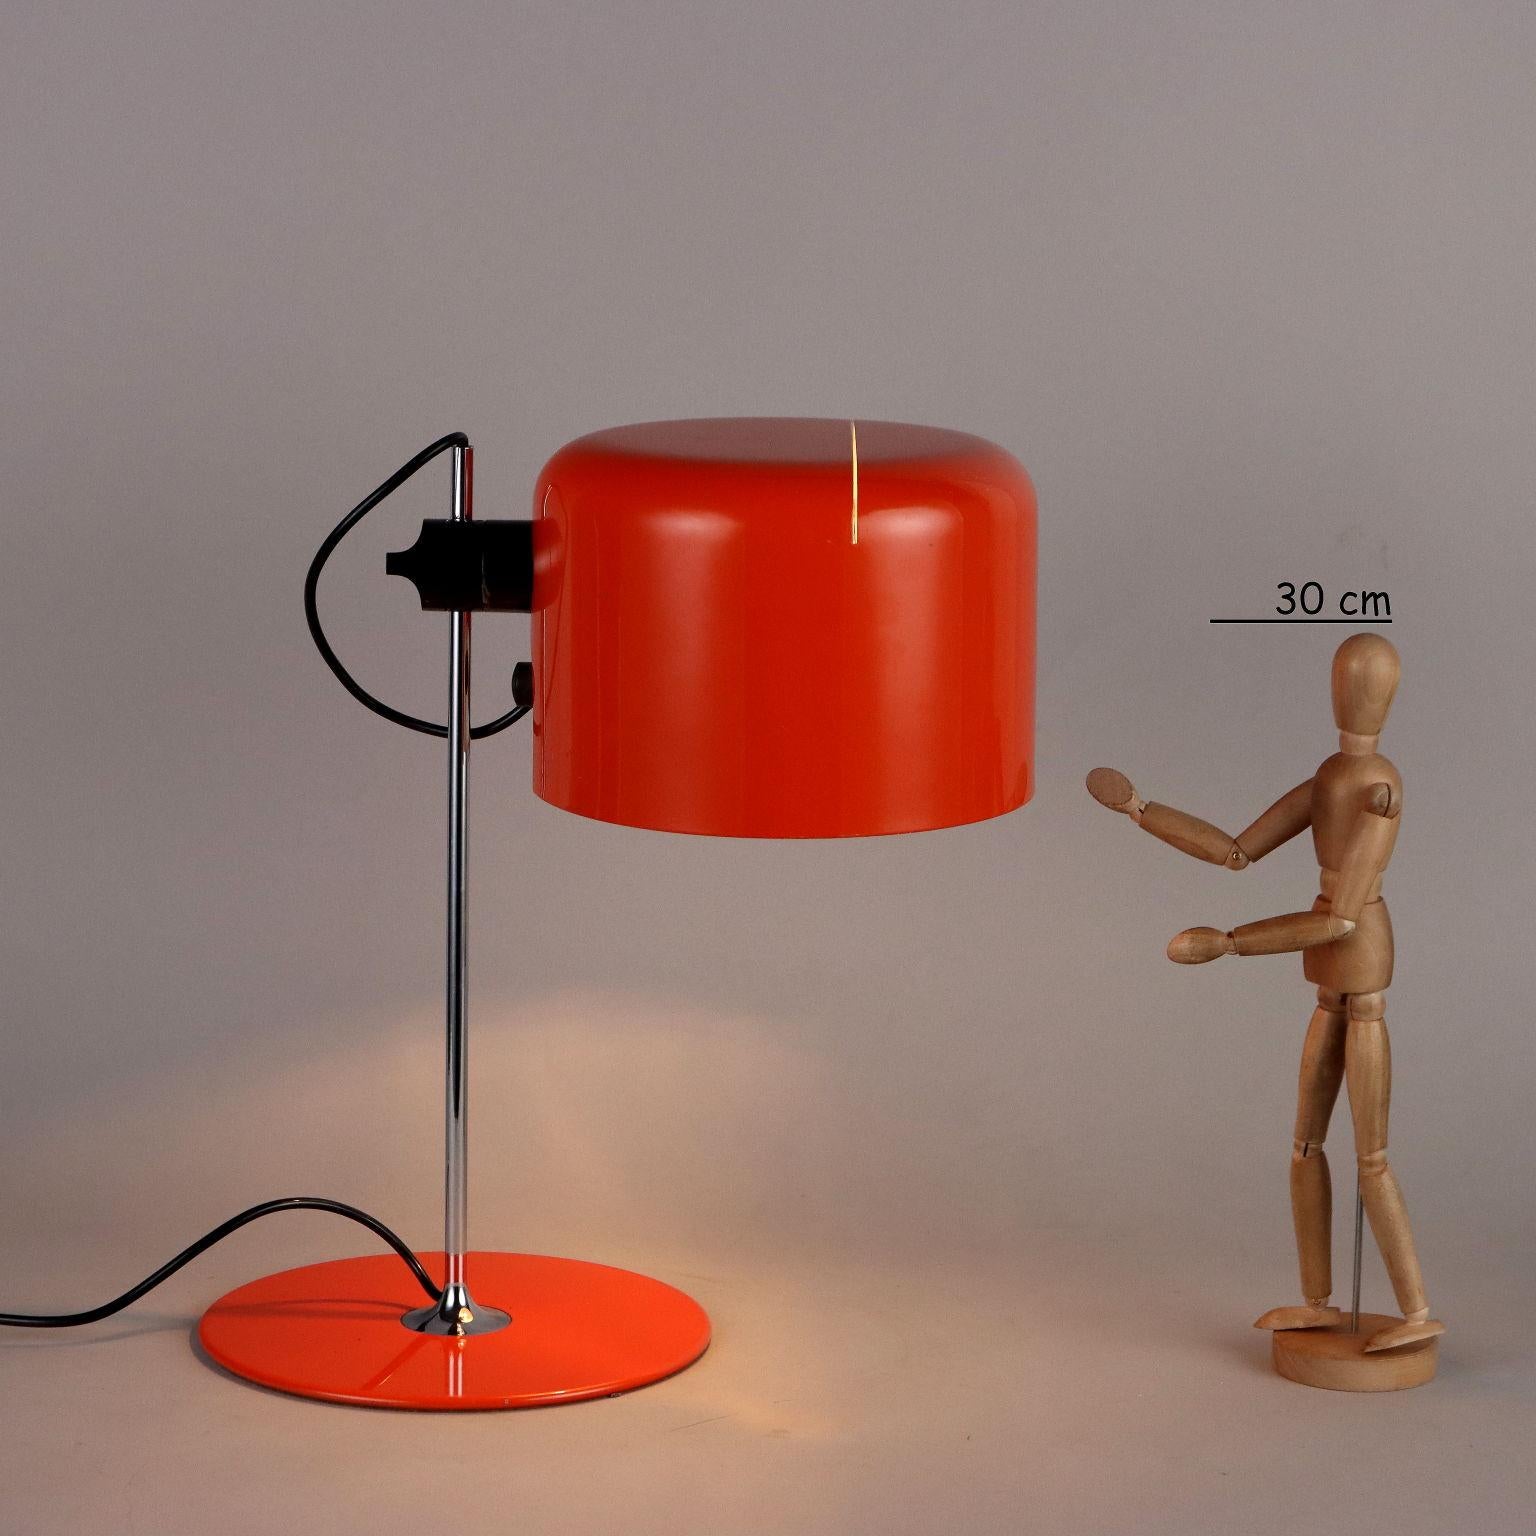 Lampada da tavolo disegnata da Joe Colombo nel 1967 presenta una base circolare in metallo laccato, stelo verticale in metallo e diffusore orientabile e regolabile in altezza in alluminio laccato. La presentiamo nella versione in arancione in